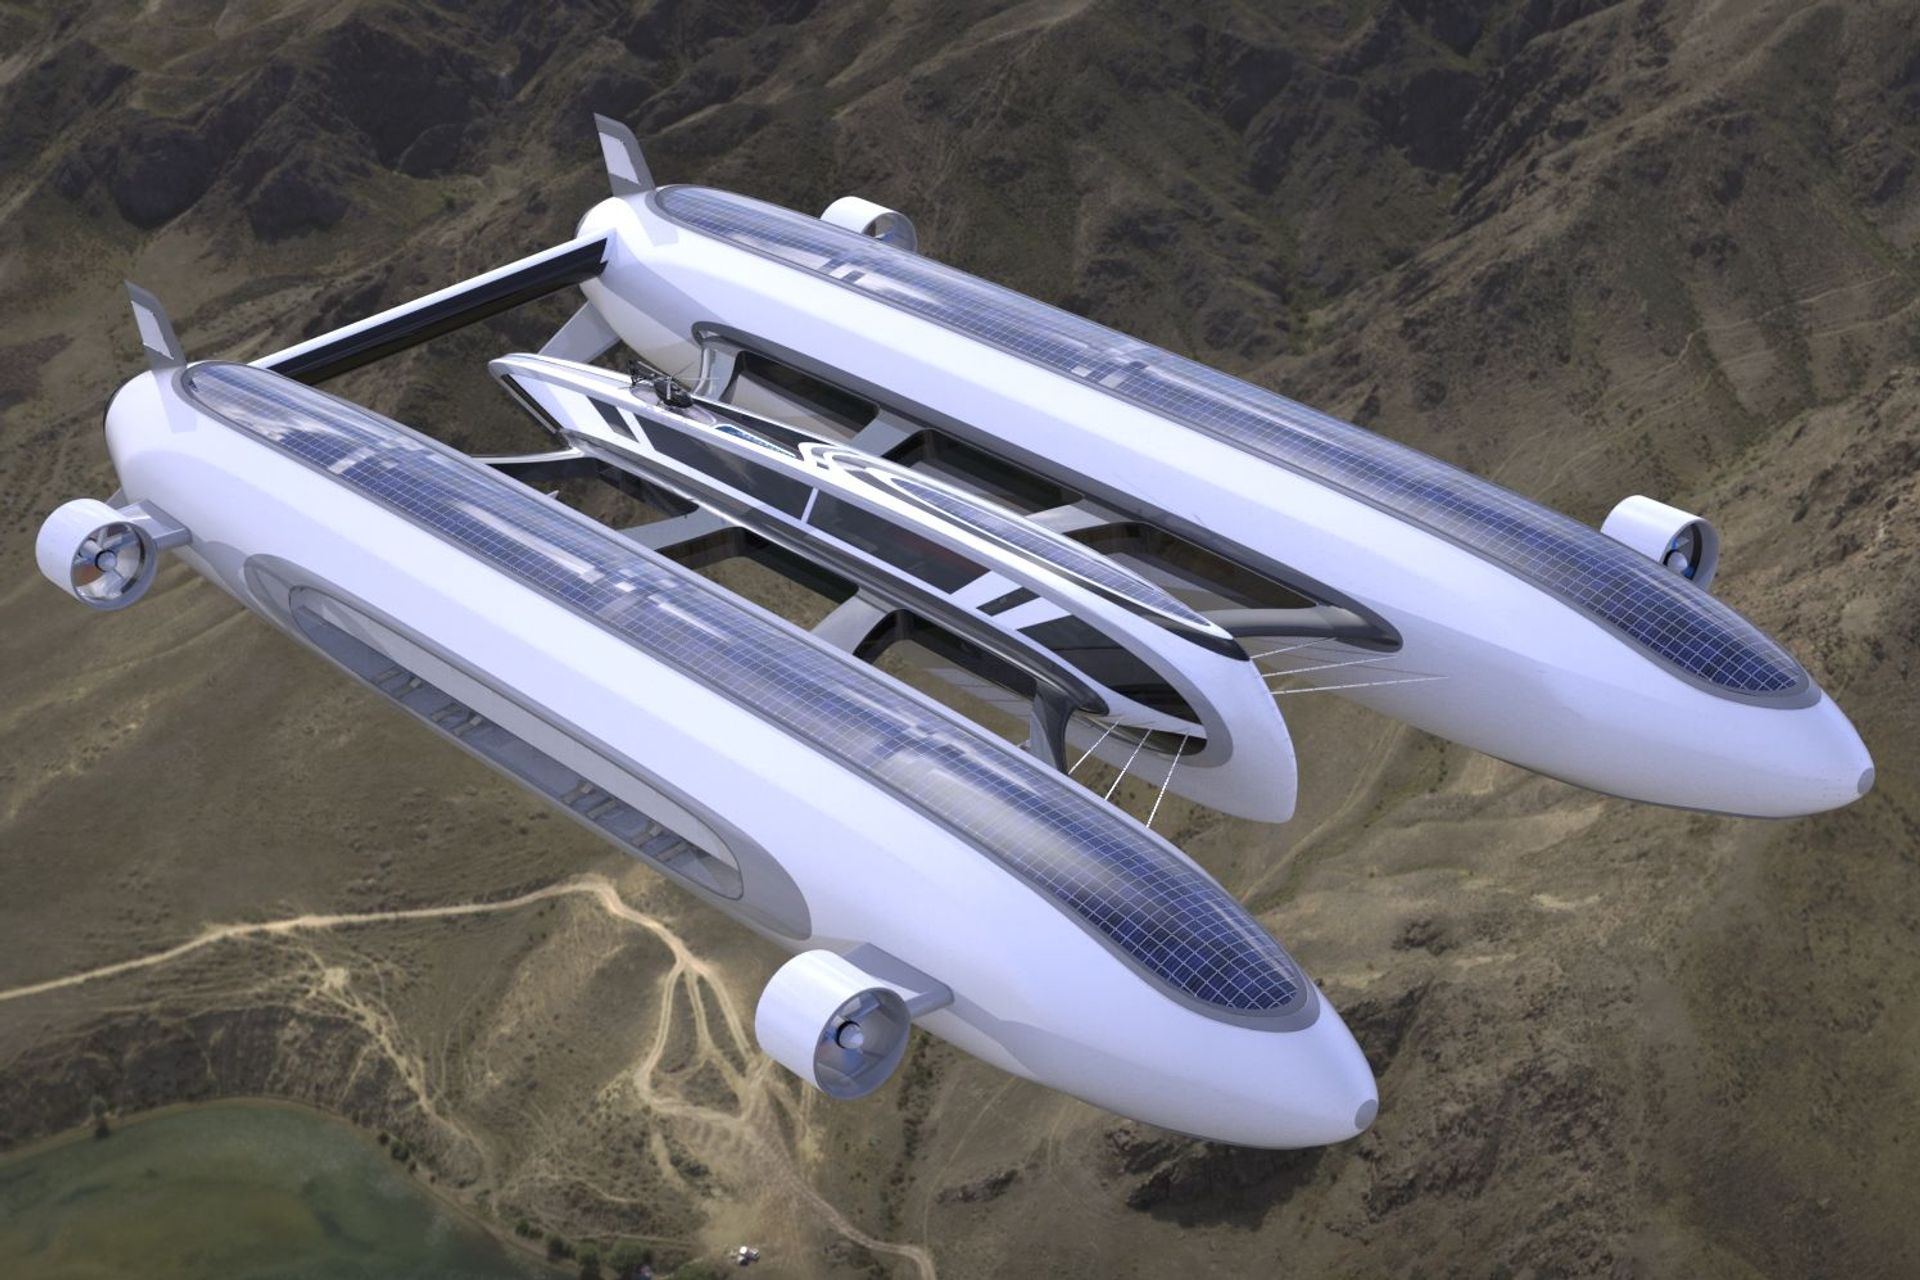 ແນວຄວາມຄິດ 'Sky Yacht' ພັດທະນາໂດຍສະຕູດິໂອ Lazzarini Design ເພື່ອຄວາມຍືນຍົງທາງອາກາດ ແລະ ການເຄື່ອນທີ່ໃນນ້ຳ.